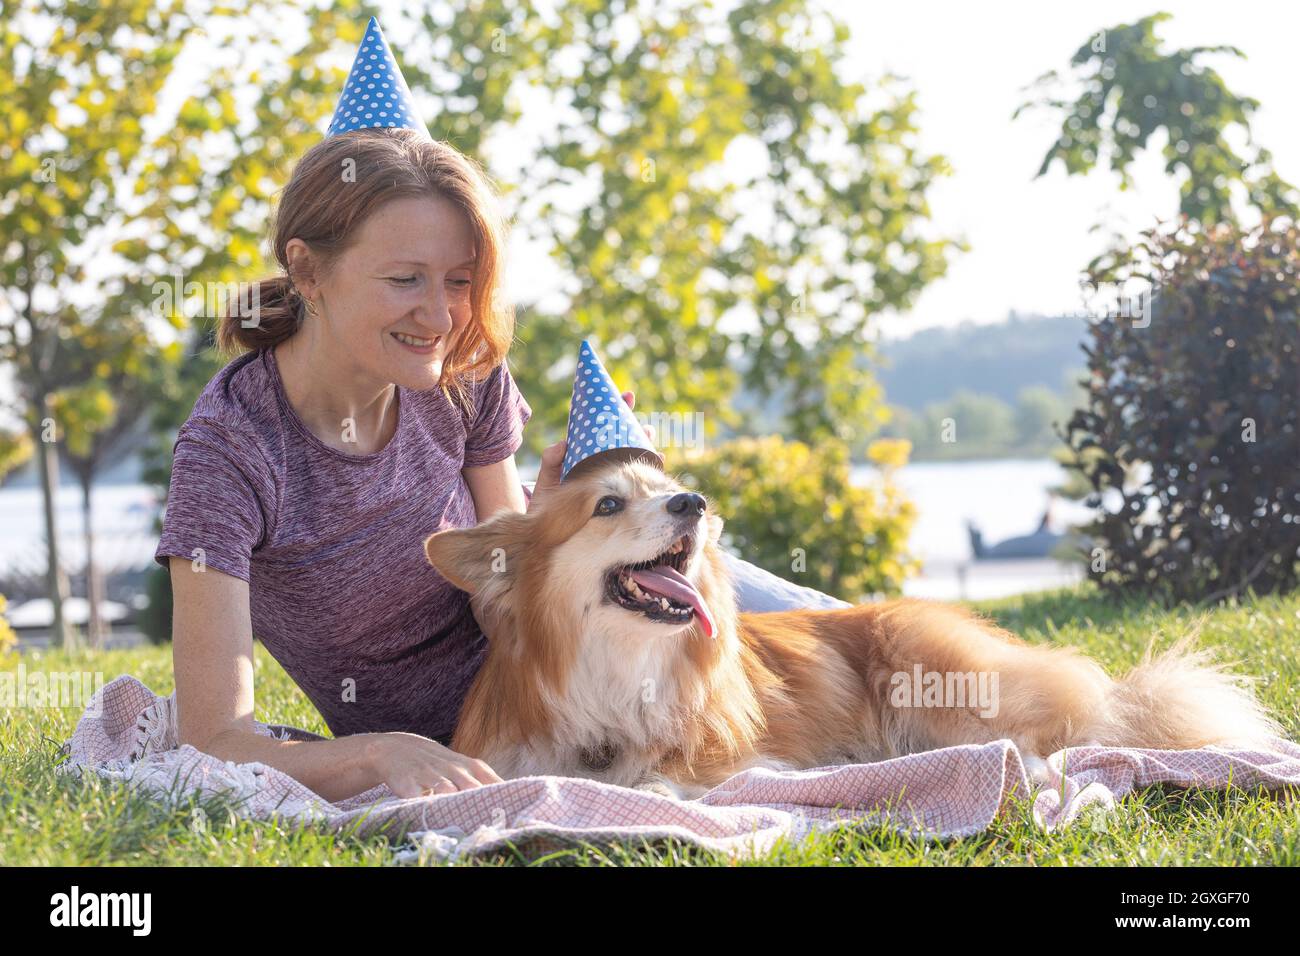 Hund in der Familie - Geburtstag aus schönen Corgi flauschig auf grünem Rasen im Geburtstagshut Stockfoto